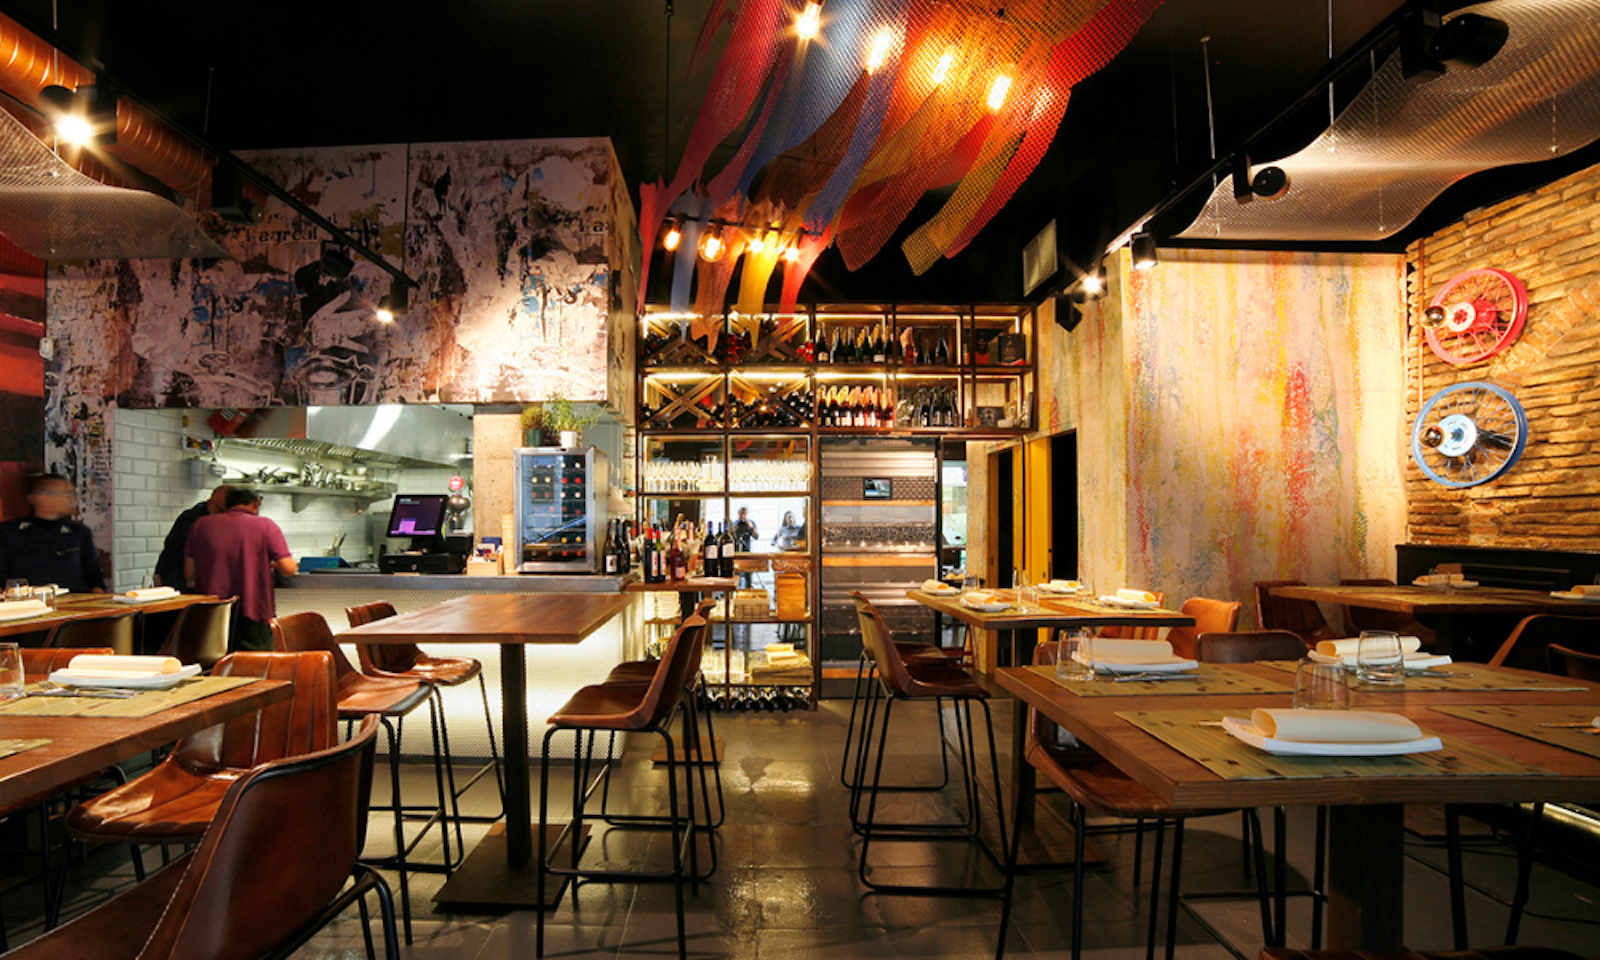 imagen 13 de La Antxoeta, un restaurante la mar de artístico.